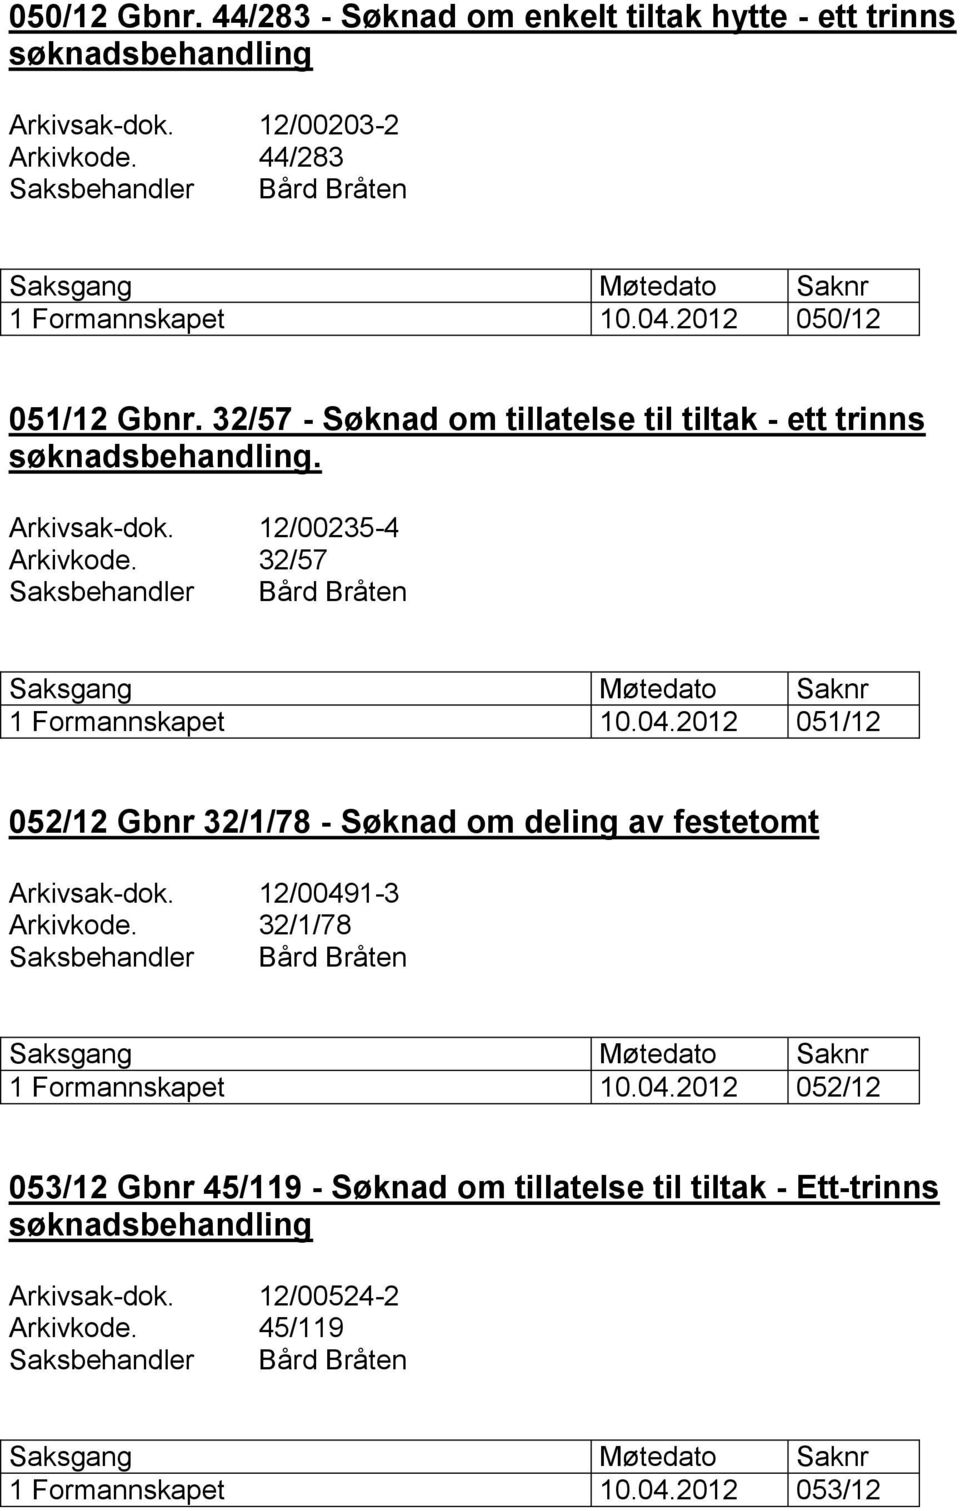 32/57 Saksbehandler Bård Bråten 1 Formannskapet 10.04.2012 051/12 052/12 Gbnr 32/1/78 - Søknad om deling av festetomt Arkivsak-dok. 12/00491-3 Arkivkode.